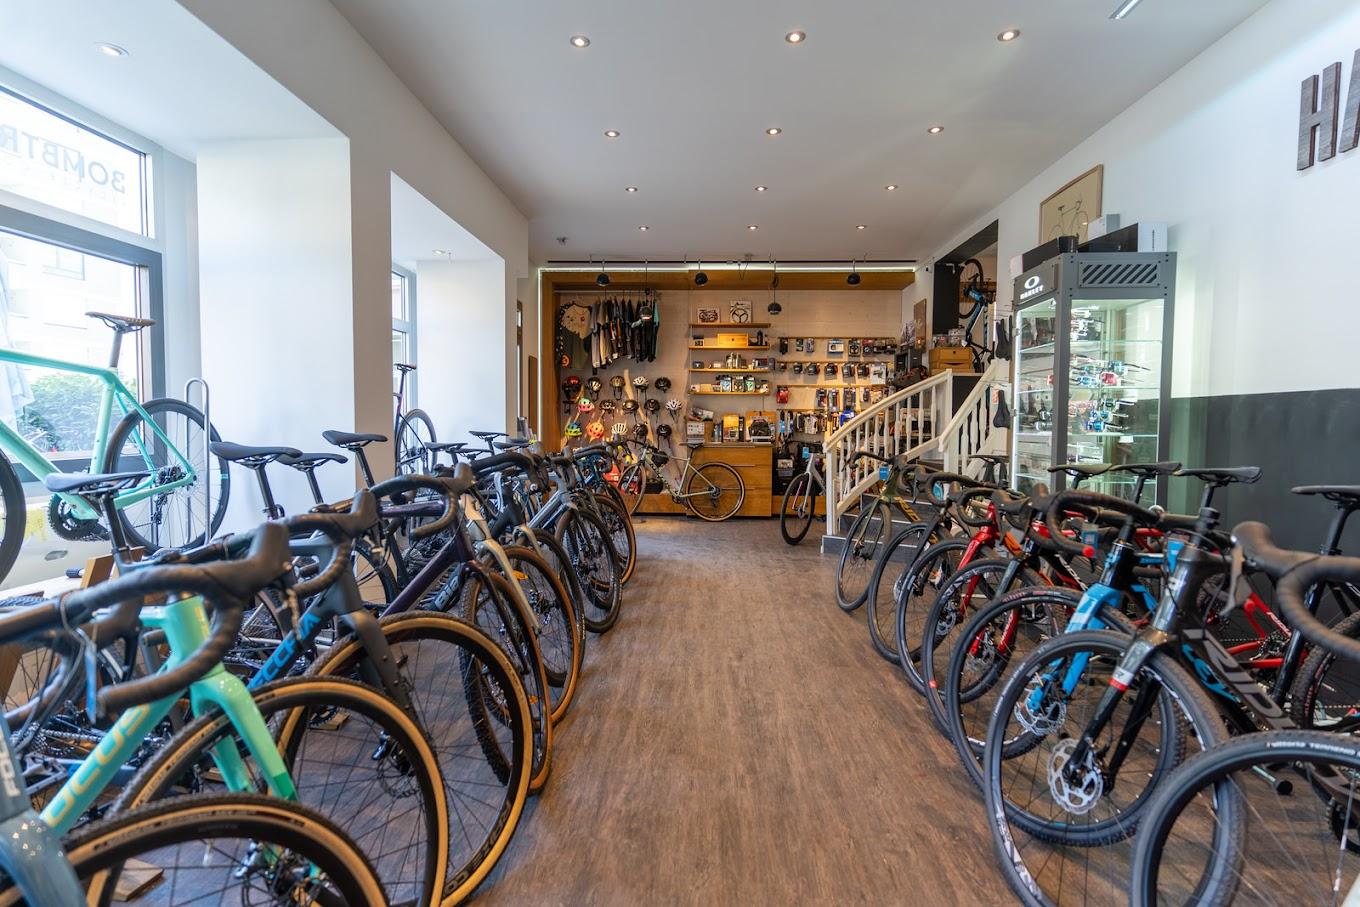 Bilder haveabike - dein Rennrad und Gravel Bike Store in Schwabing